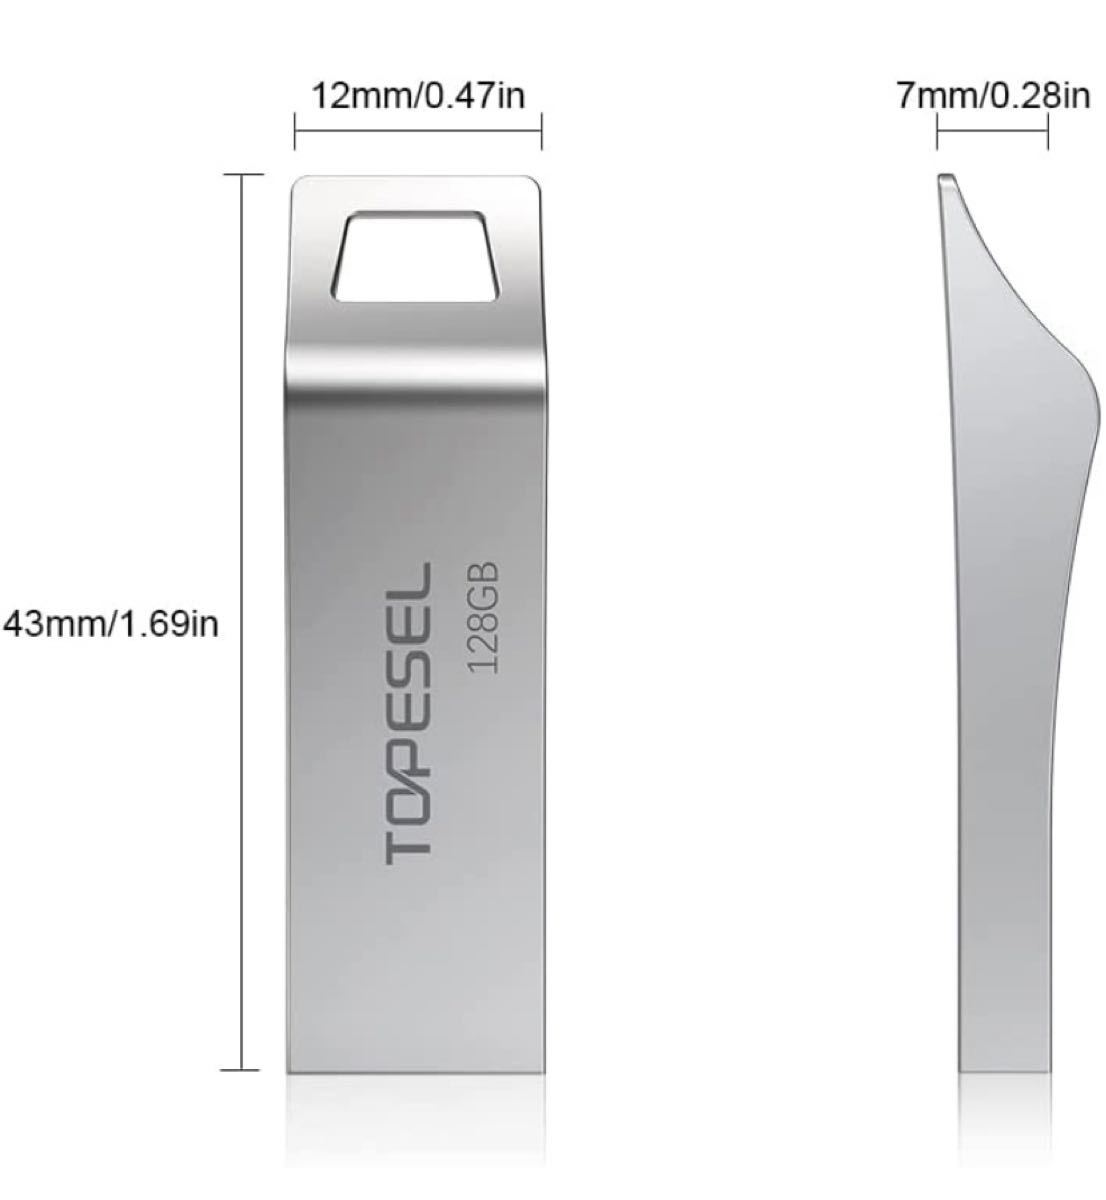 USBメモリ128GB USB3.0 小型 耐衝撃 金属ボディ データ高速転送